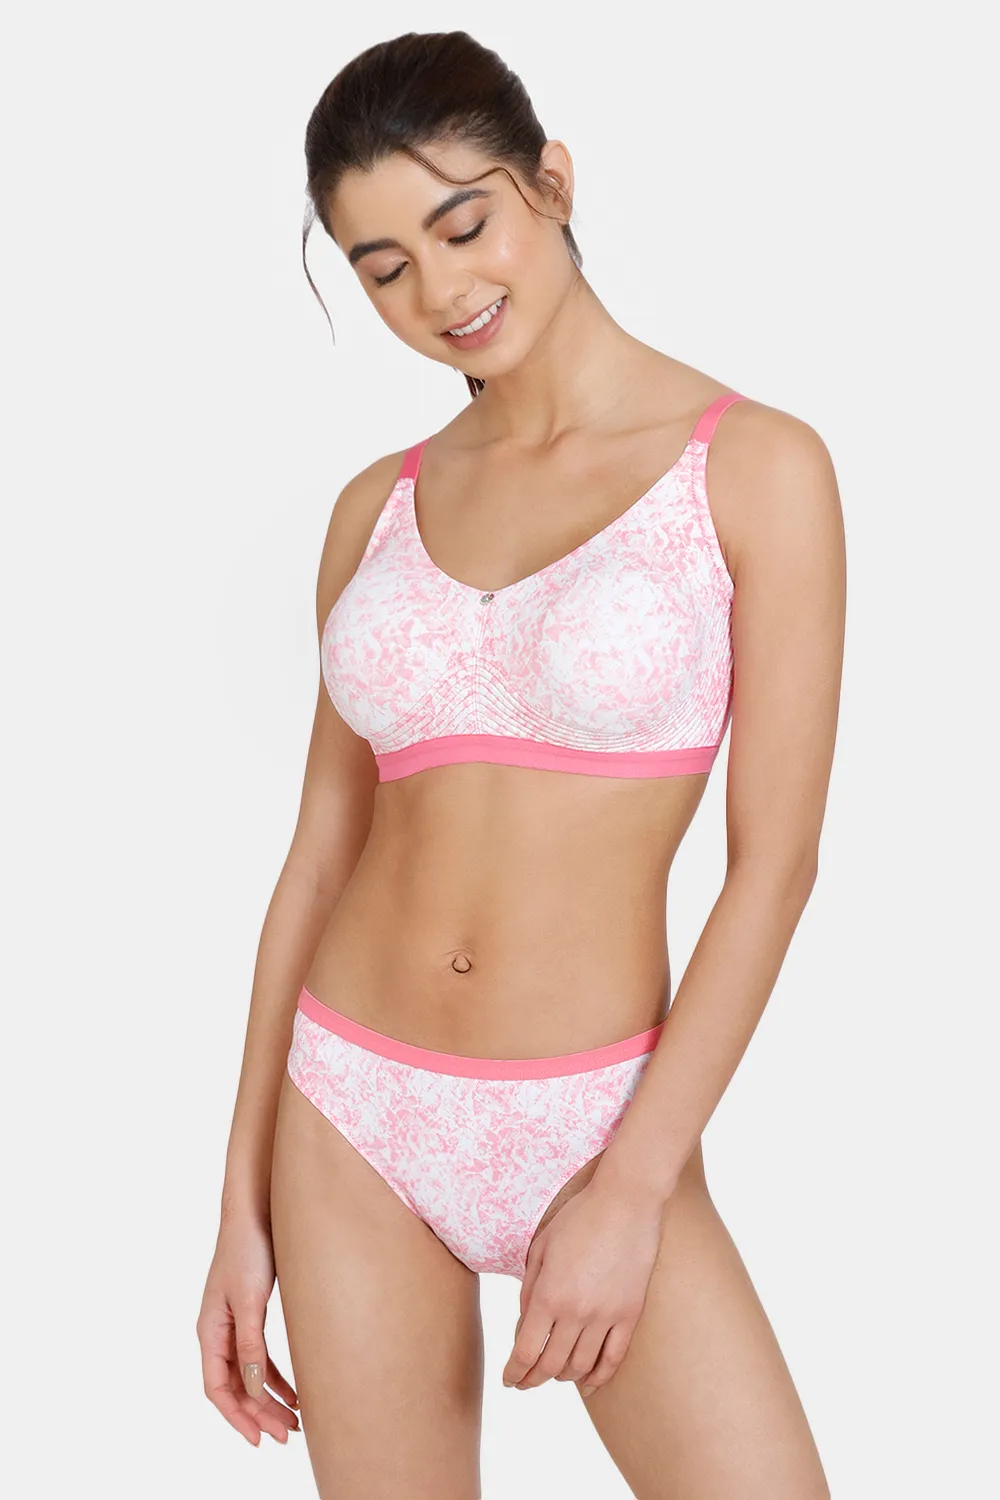 Buy online Willmore Fancy Bra Pink Net Design from lingerie for